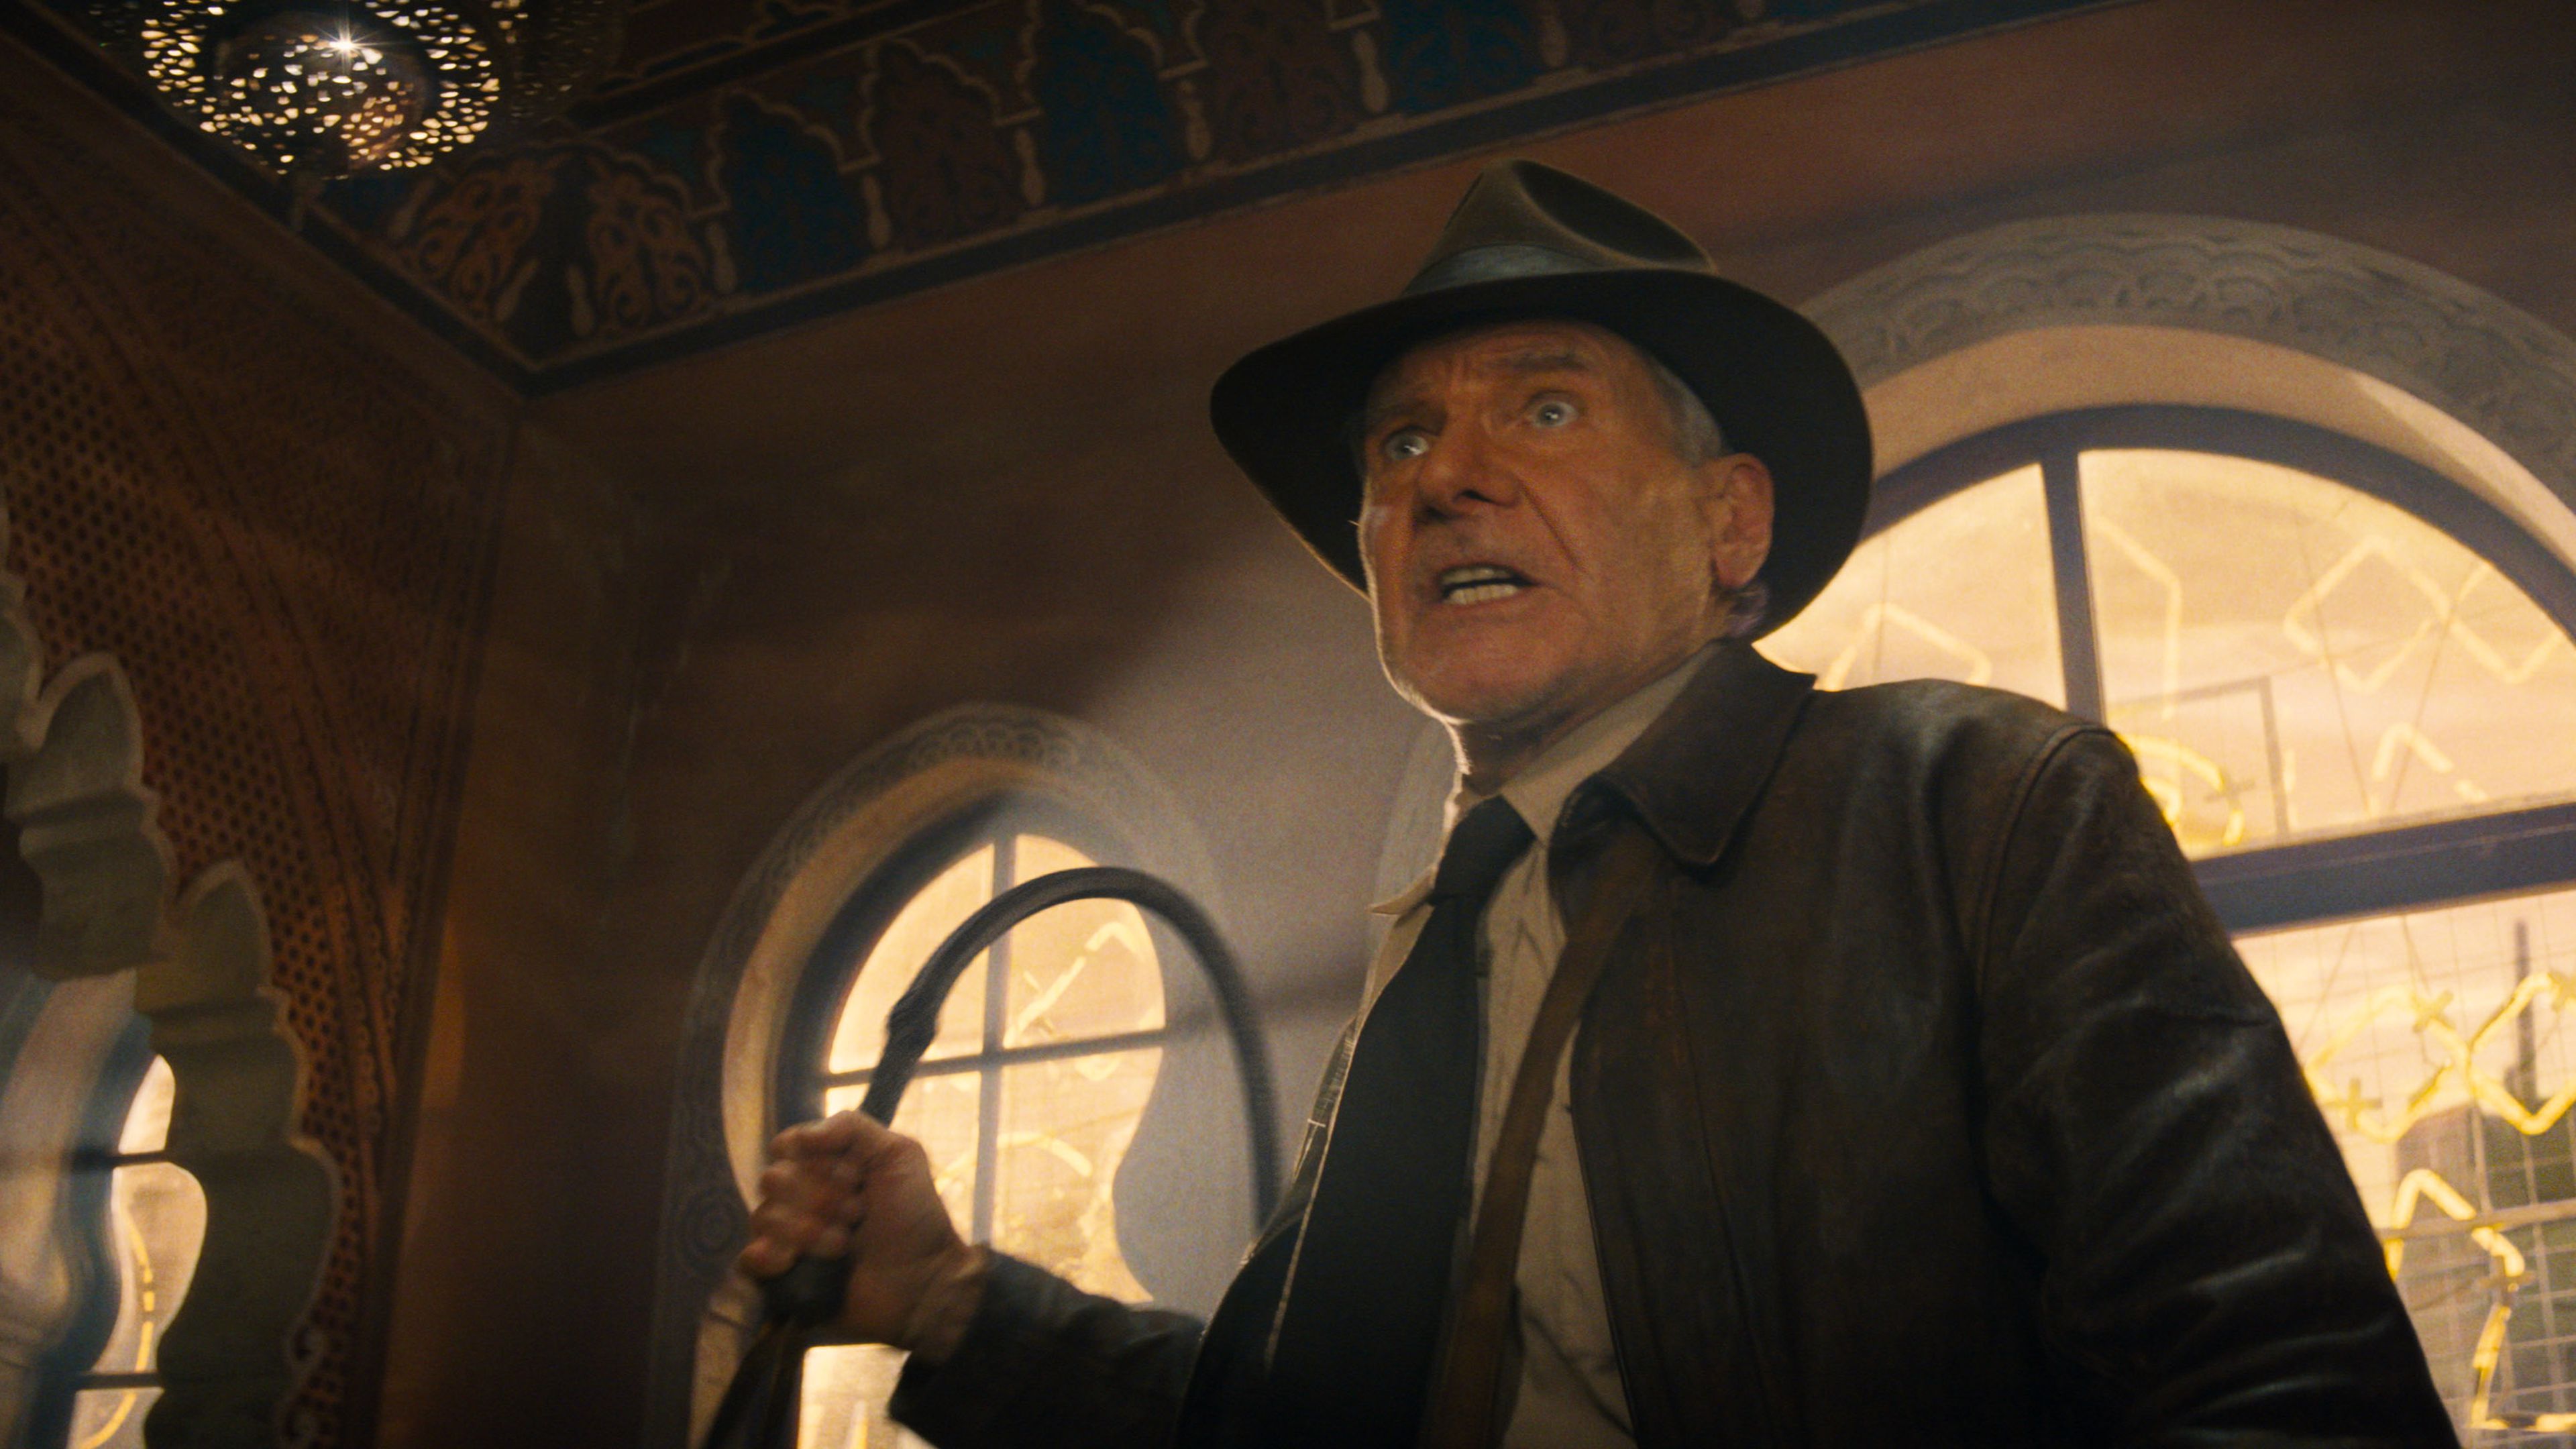 Vamos descobrir o que aconteceu a Shia LaBeouf no novo Indiana Jones